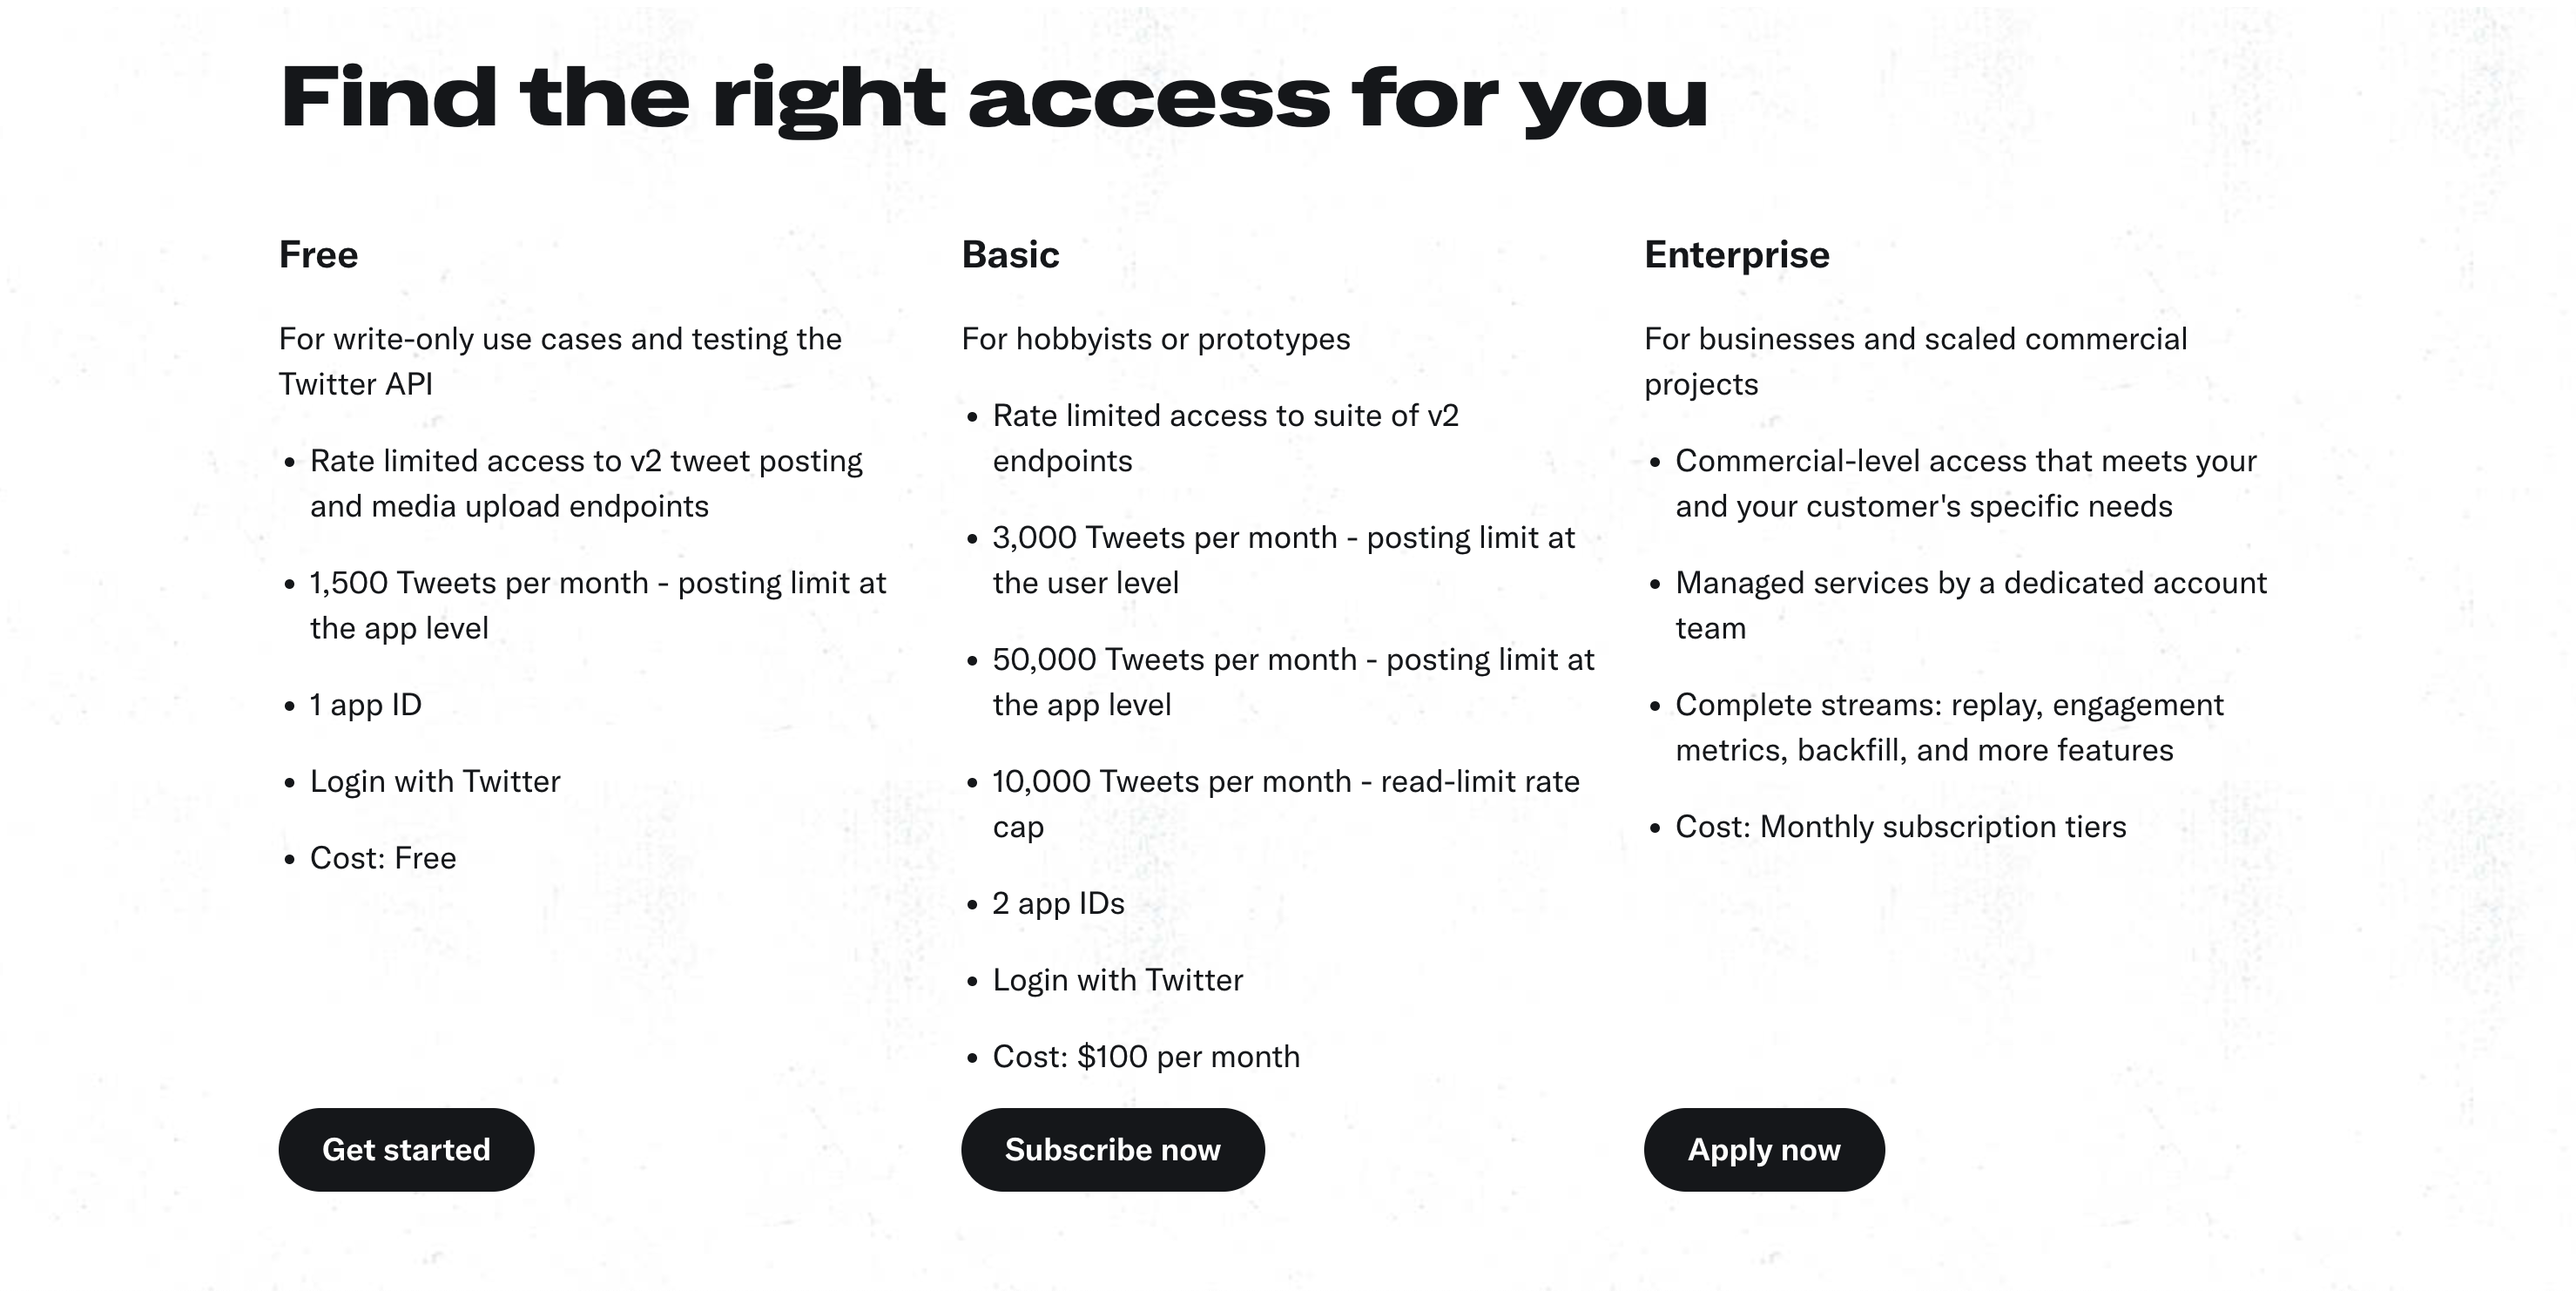 Twitter API price chart showing Free, Basic, Enterprise